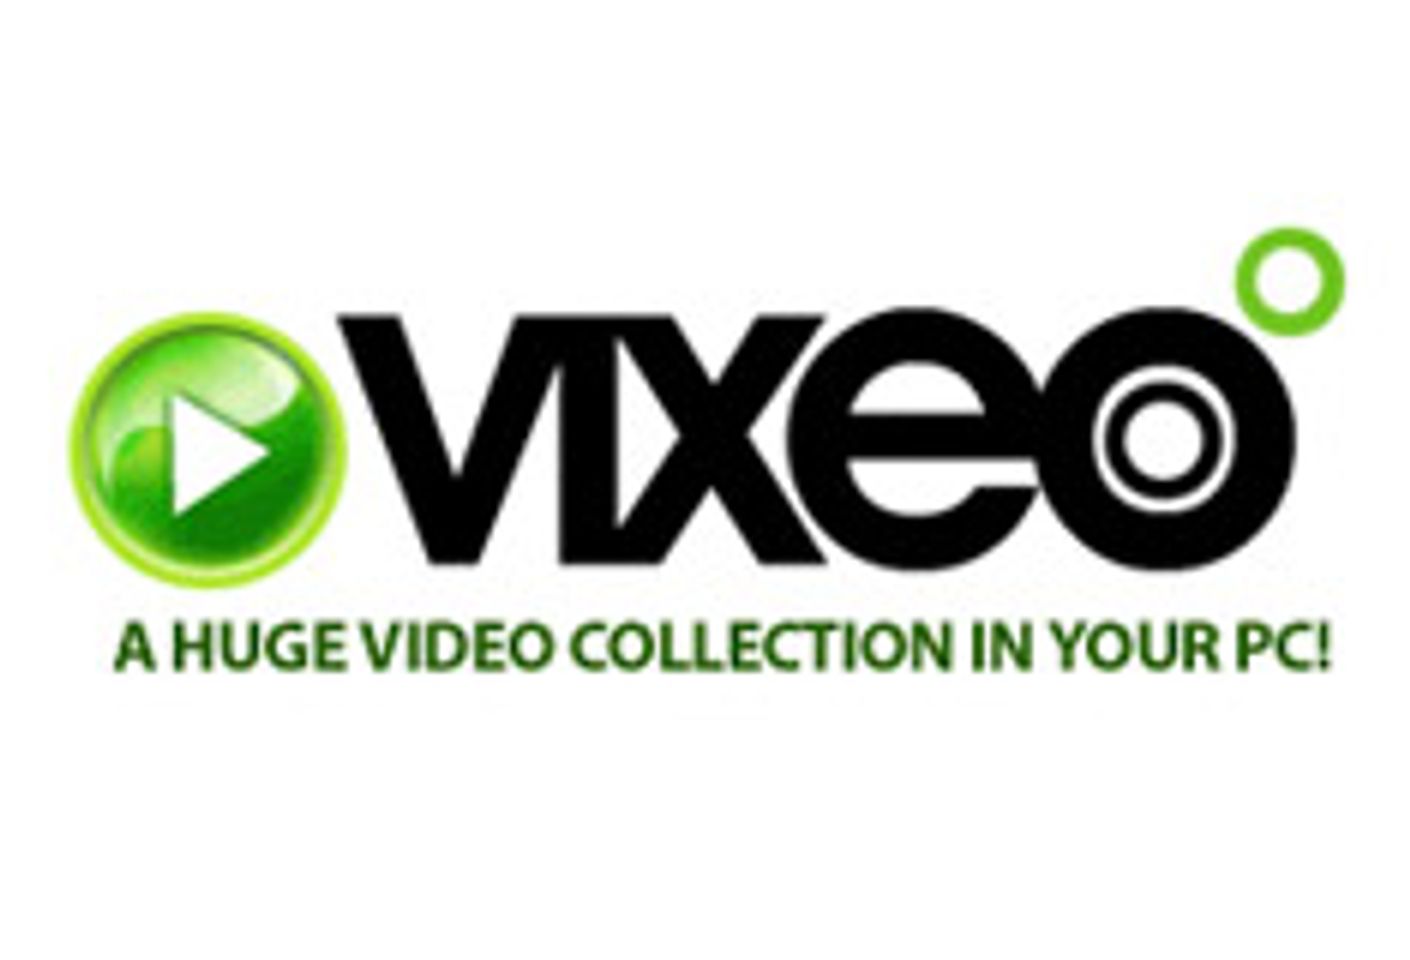 Vixeo.com Announces Xbox 360 Giveaway